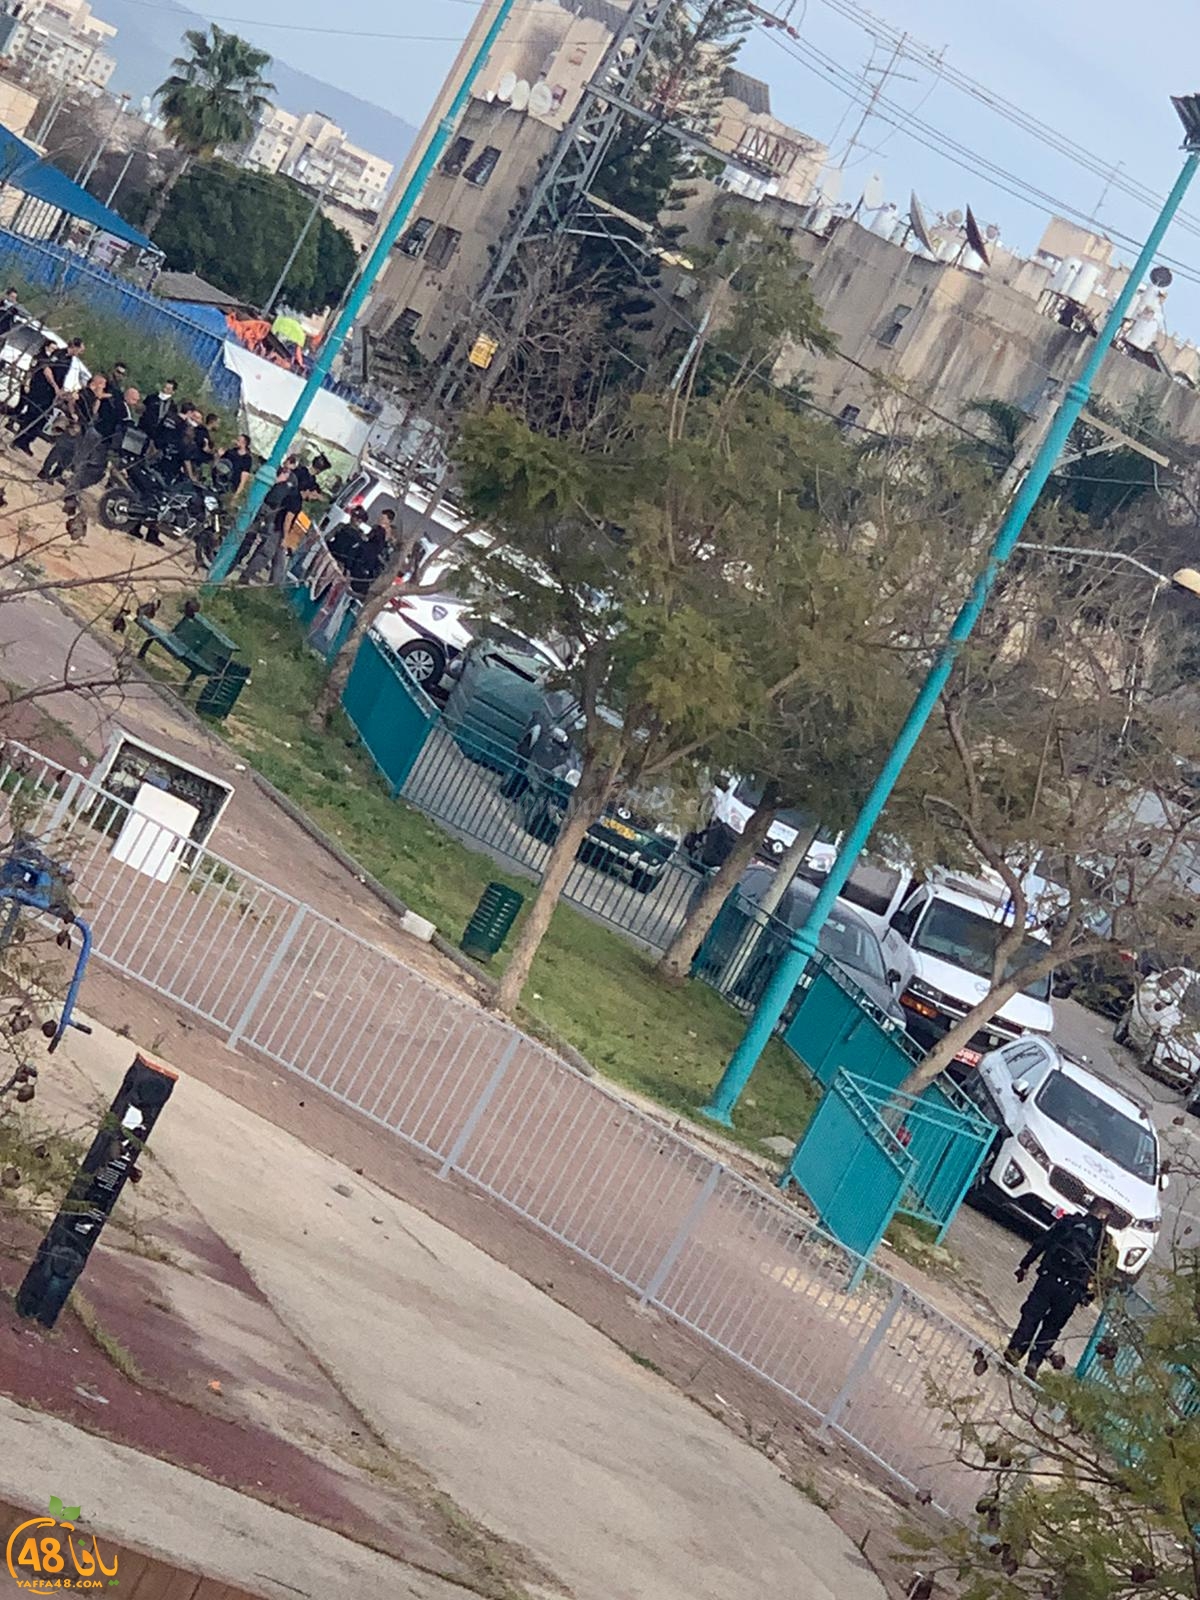  فيديو: بعد يافا - احتجاجات في حي الجواريش بالرملة على عنف الشرطة